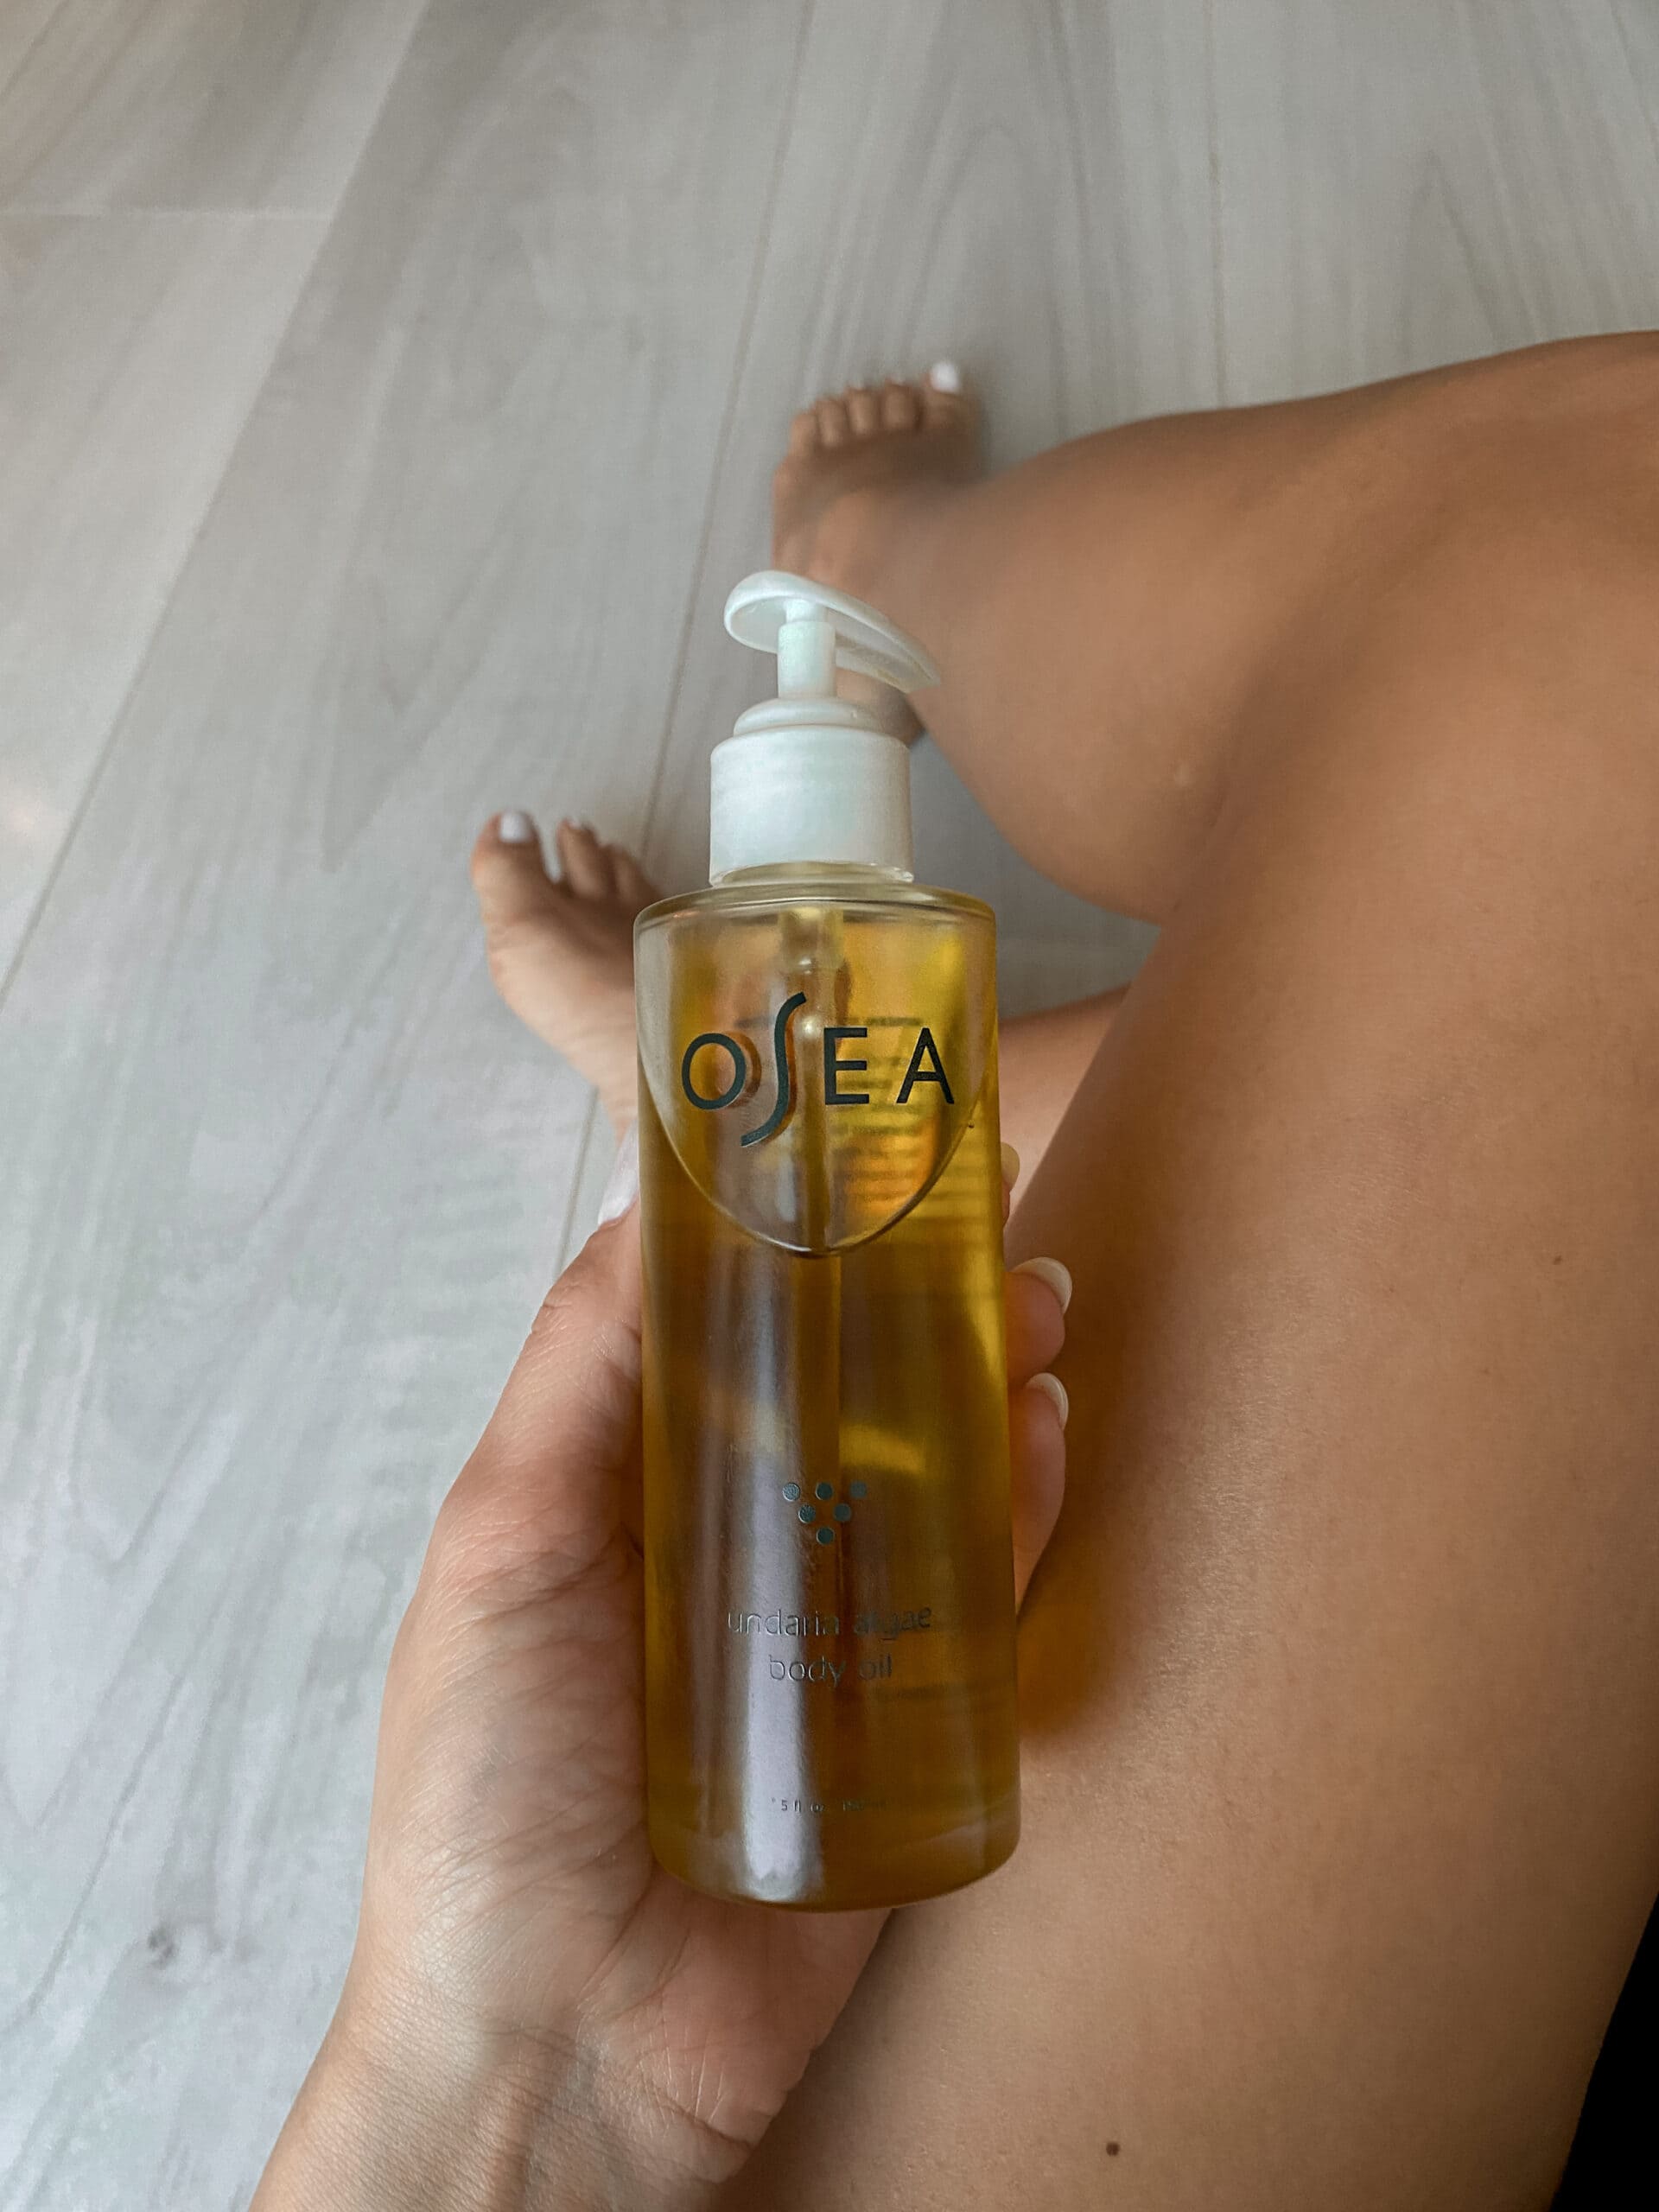 Undaria Algae Body Oil